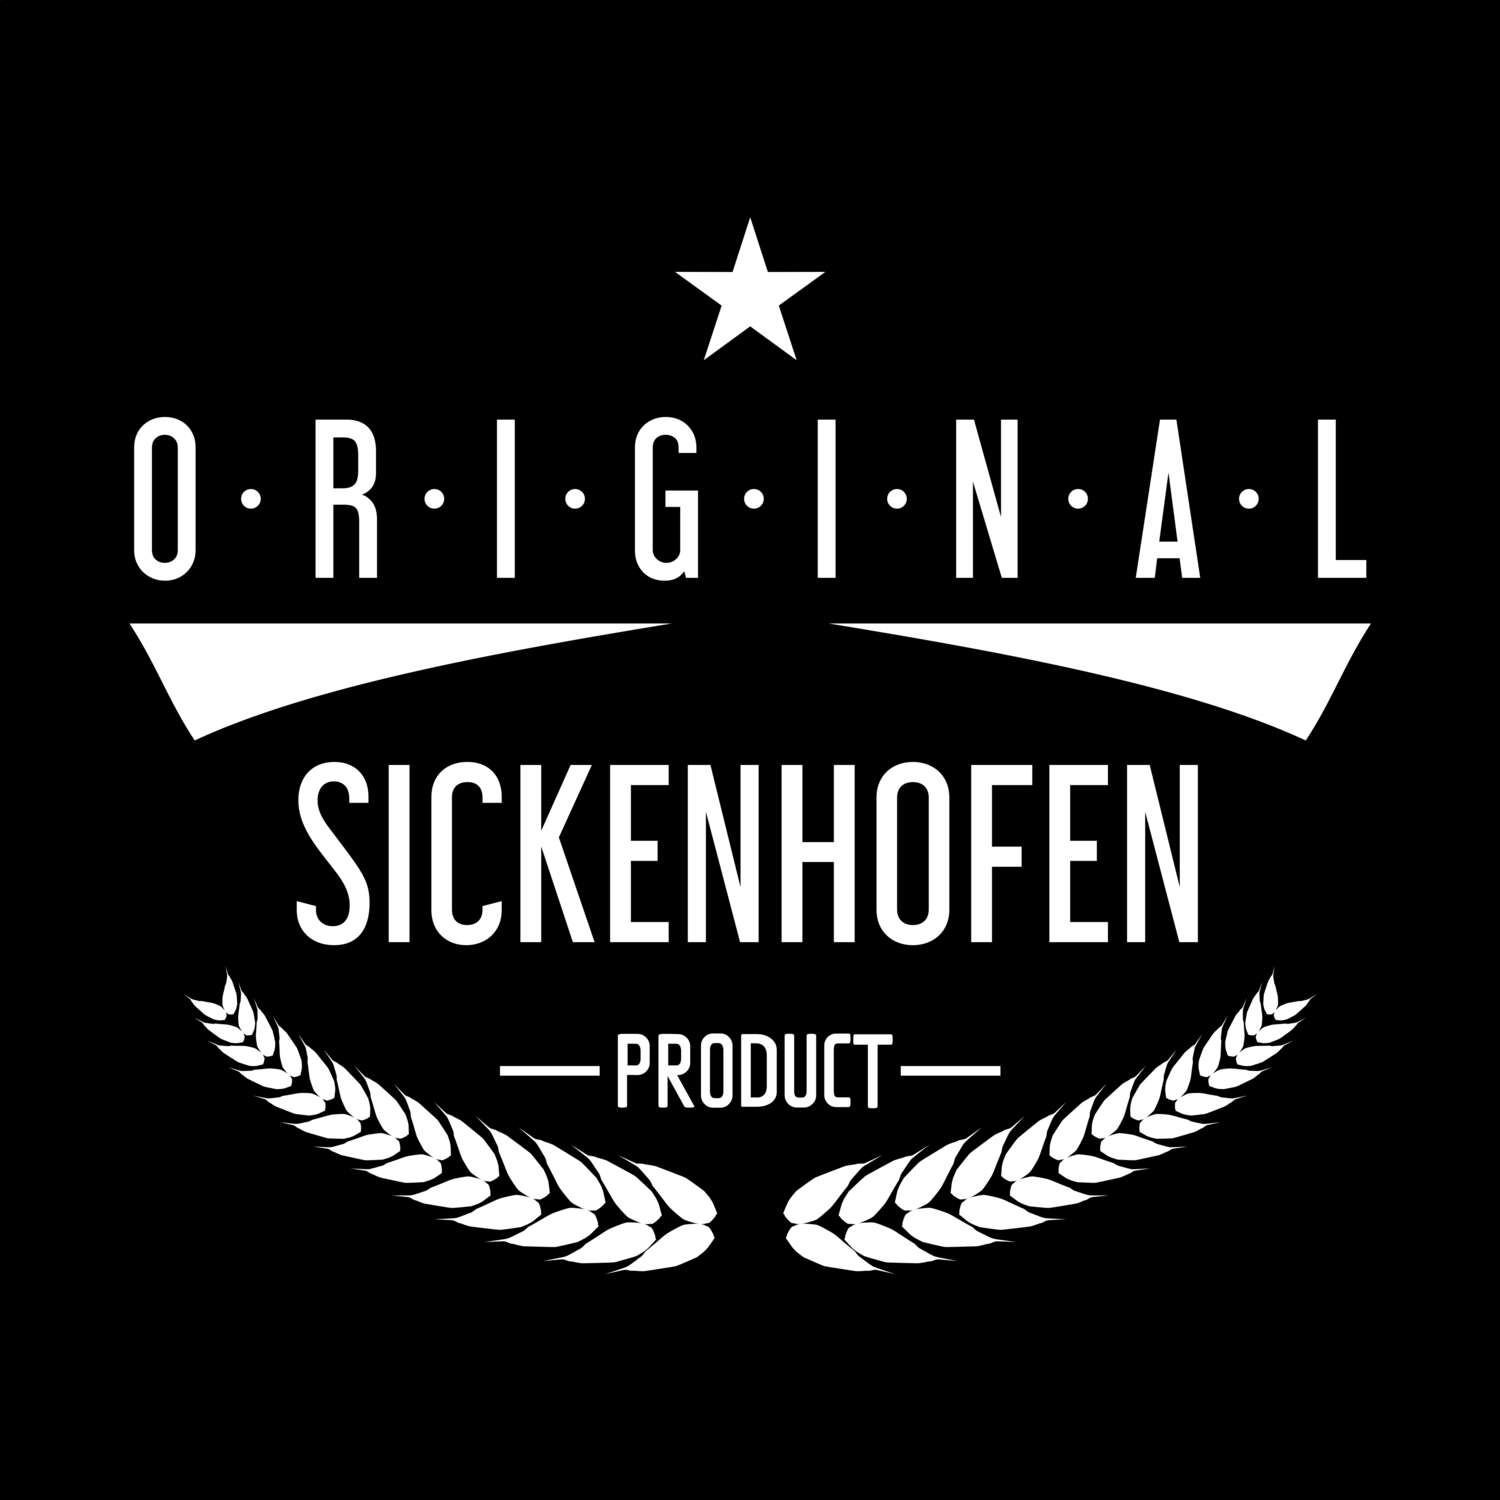 Sickenhofen T-Shirt »Original Product«